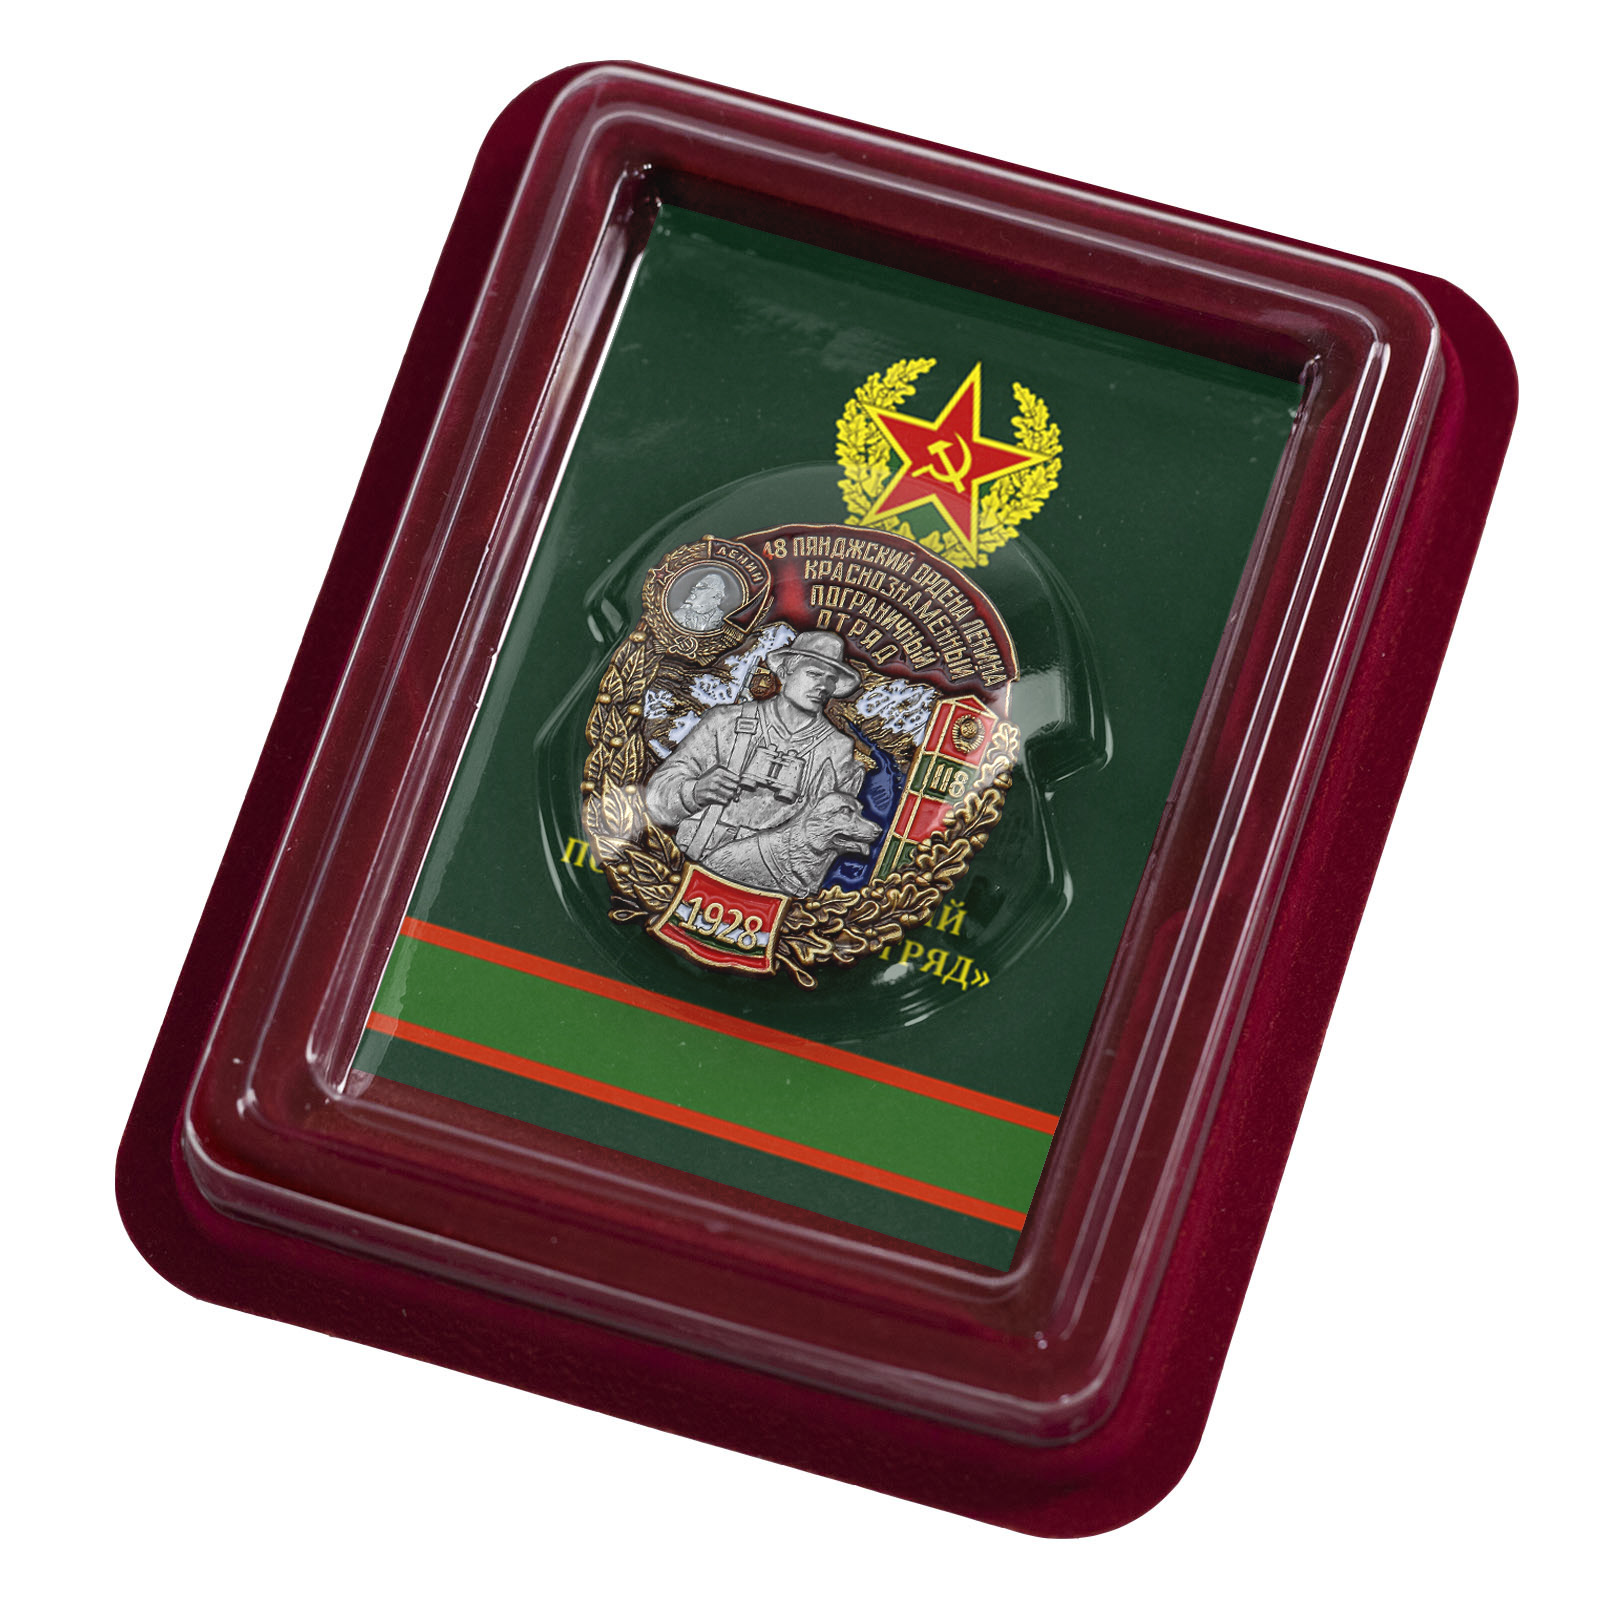 Купить знак 48 Пянджский ордена Ленина Краснознамённый Пограничный отряд онлайн